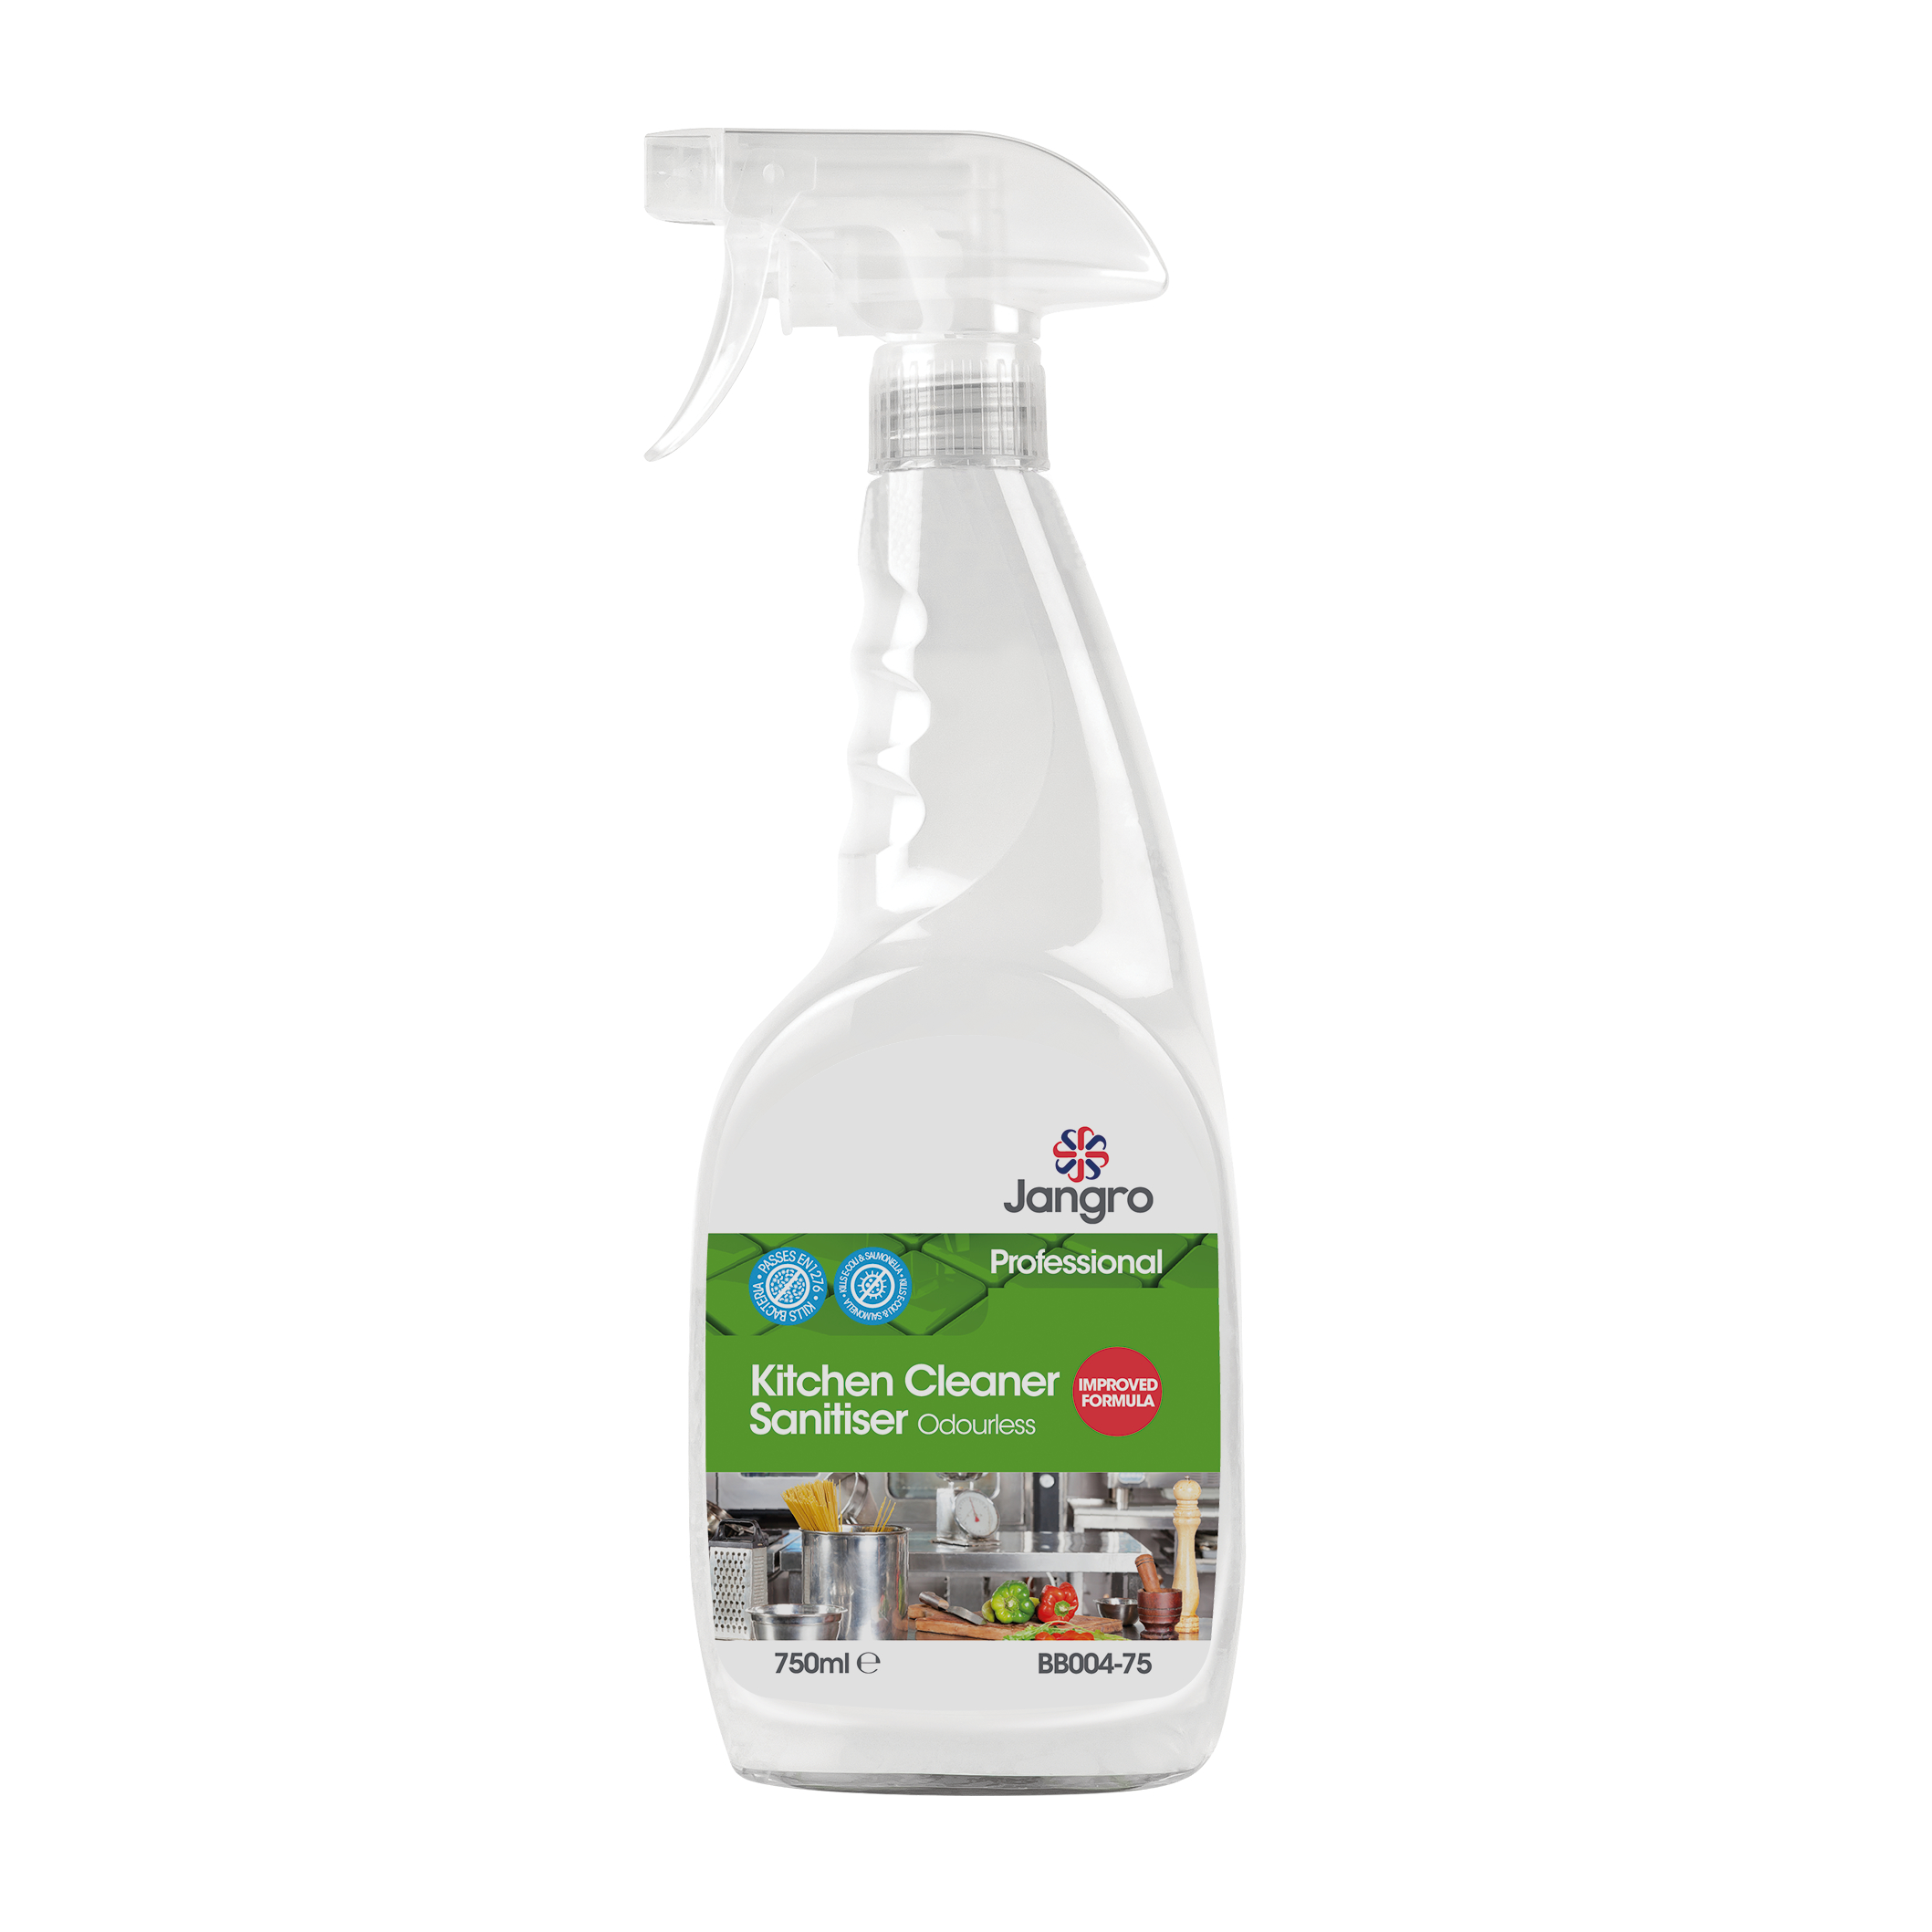 Jangro Kitchen Cleaner Sanitiser 750ml Trigger Spray